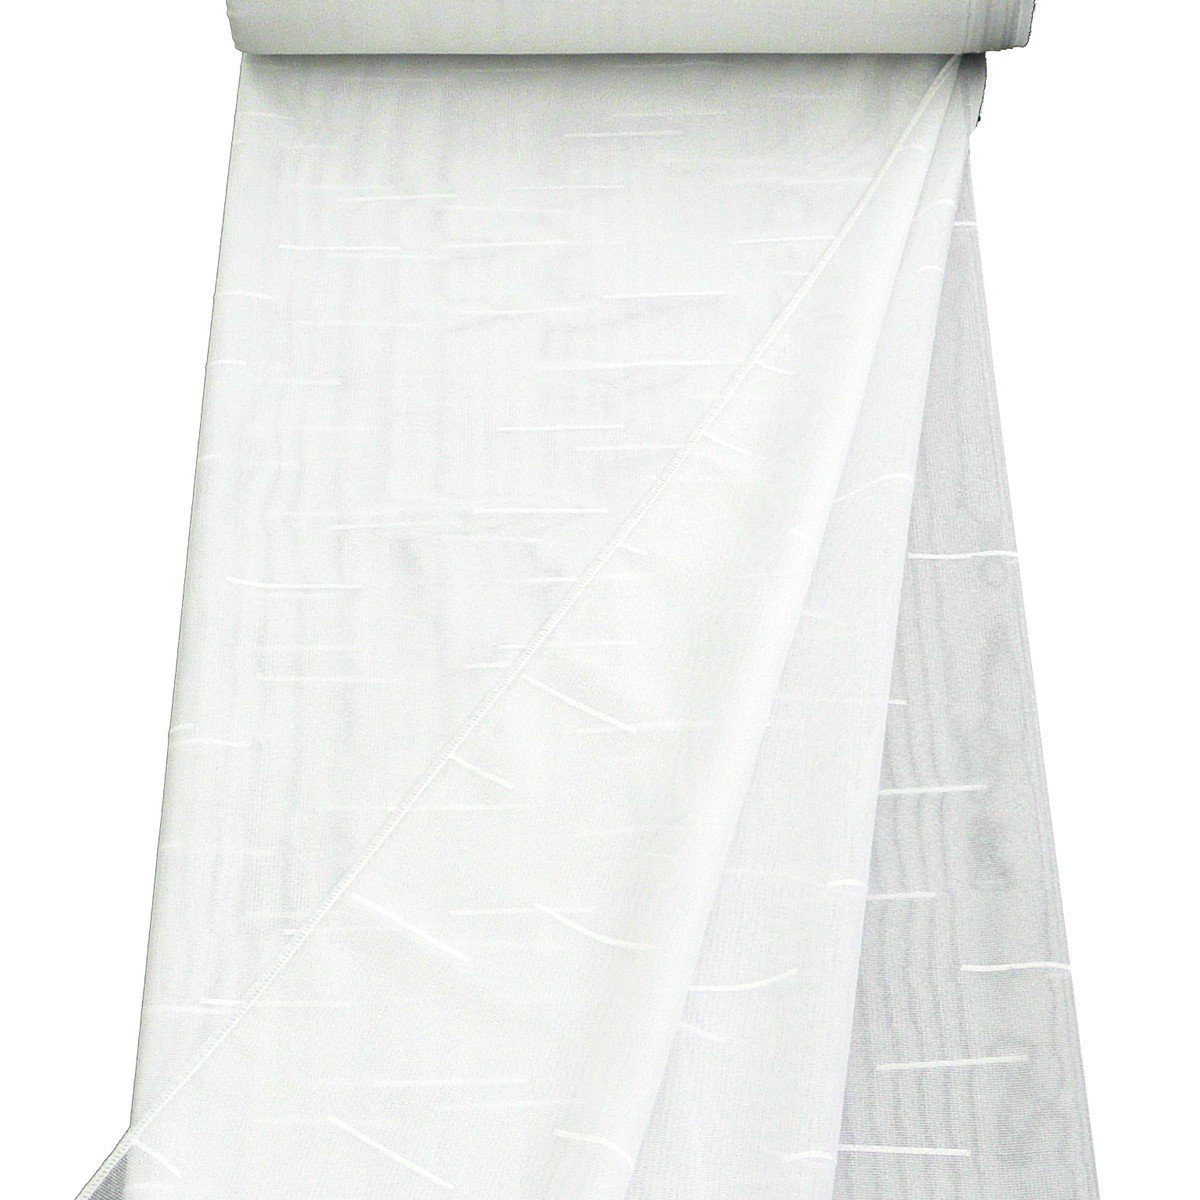 Meterware Stores grobe Drehergardine mit Sable weiß 260cm hoch,  halbtransparent, überbreit